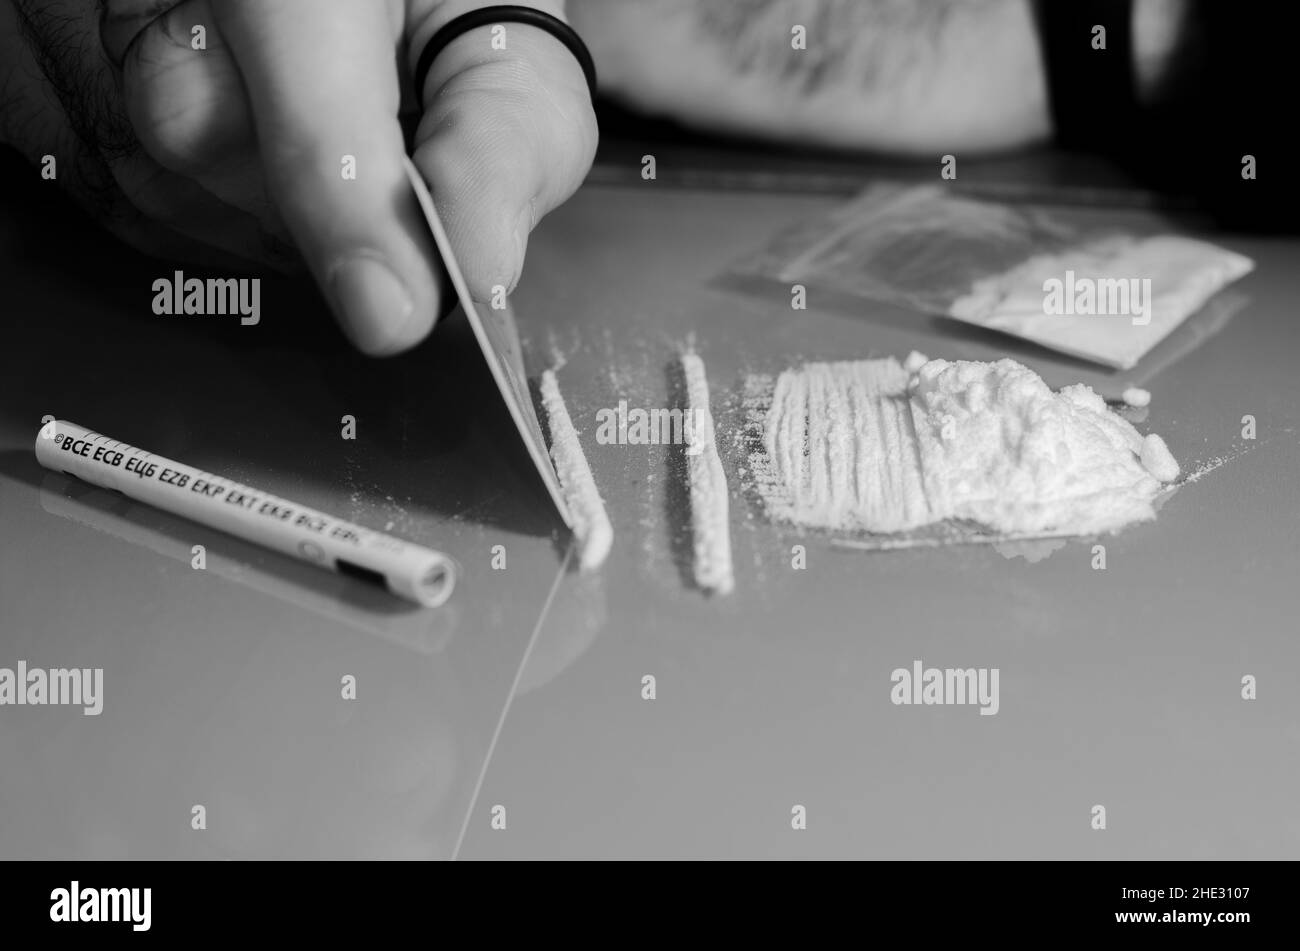 L'homme fractionne la cocaïne en bandes et puis en ronflements.Concept de narcotiques.Version noir et blanc. Banque D'Images